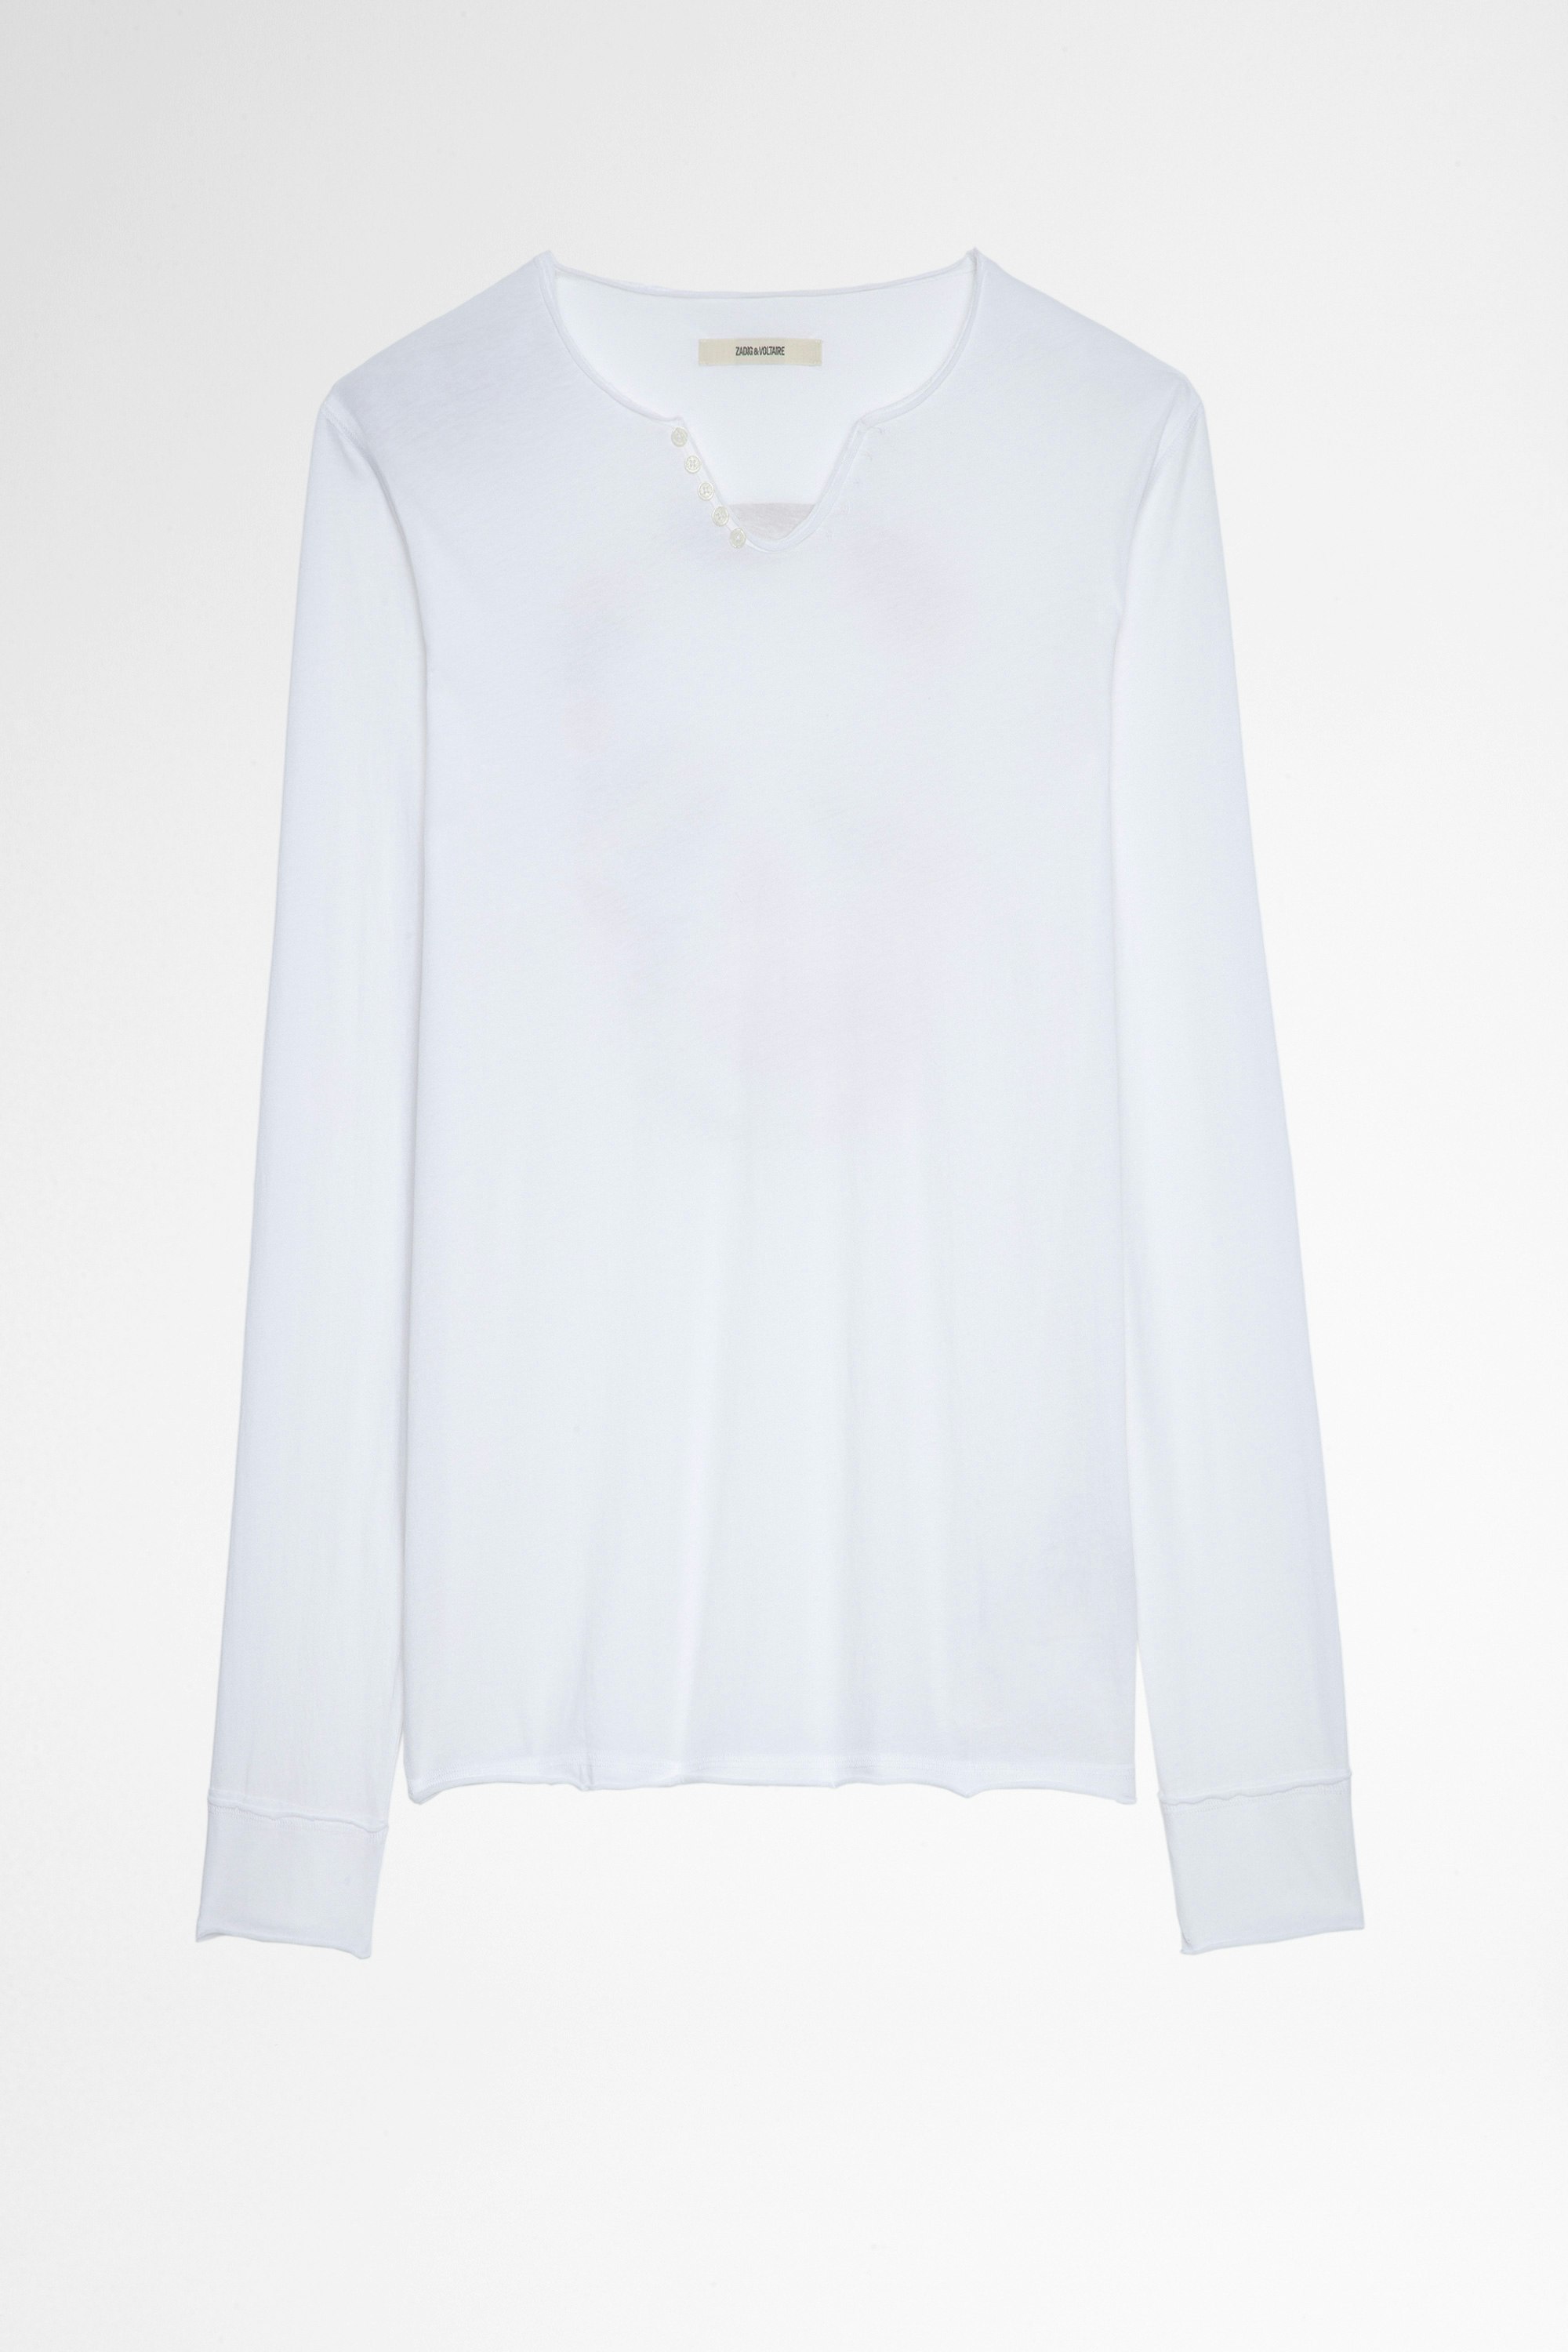 T-shirt Monastir Herren-T-shirt mit Henley-Ausschnitt aus weißer Baumwolle